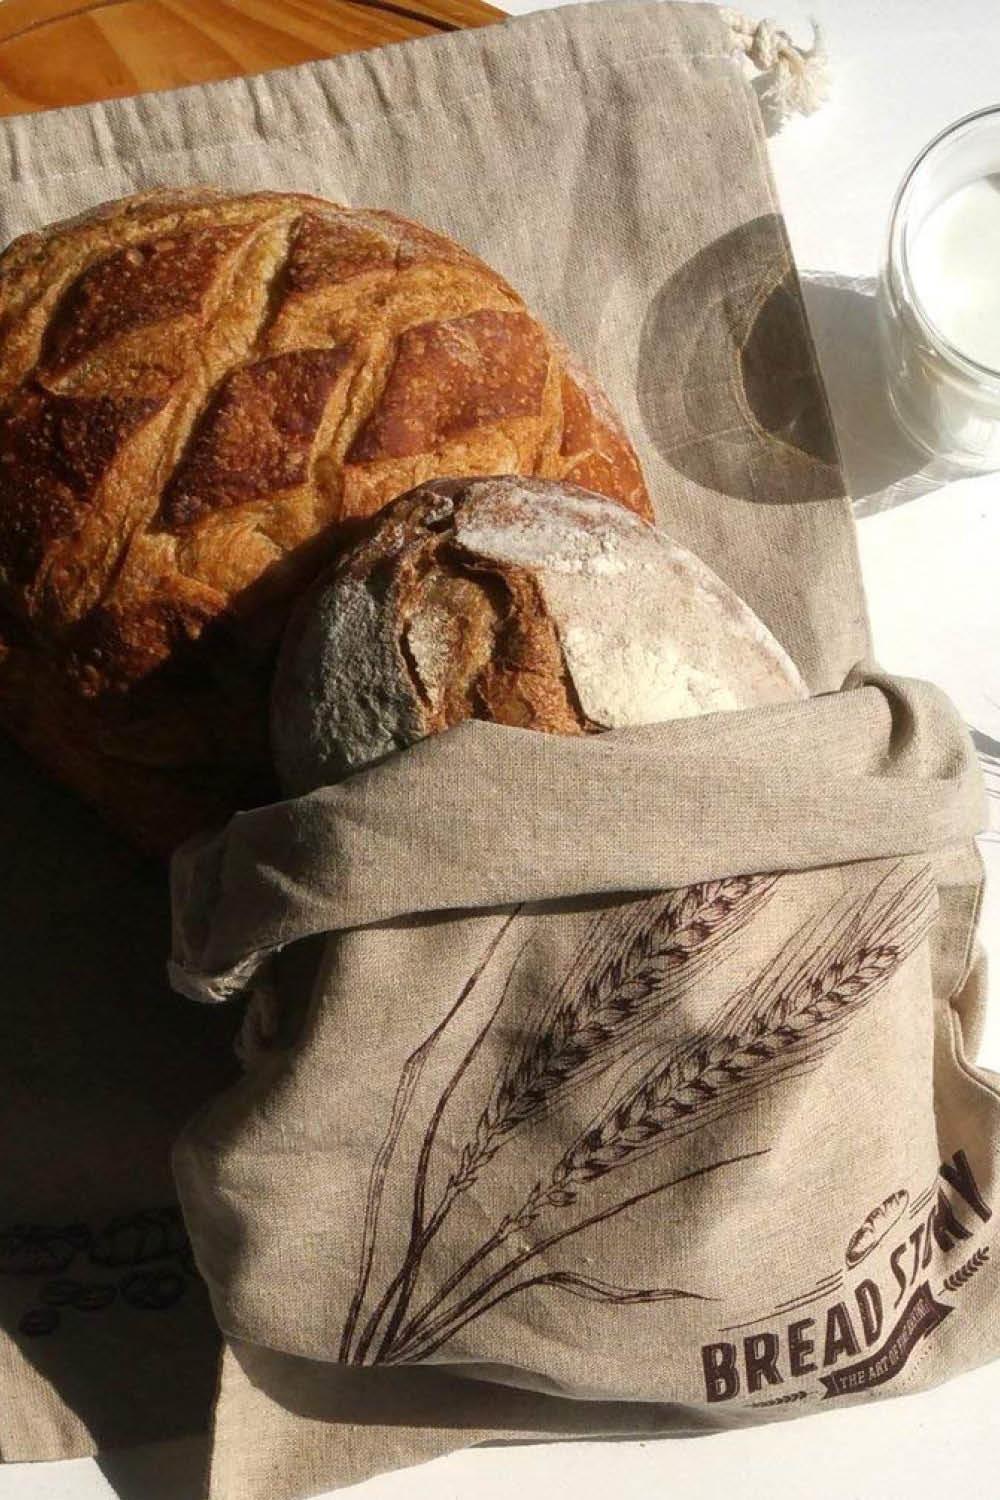 hacer compra mas ecologica bolsa para el pan